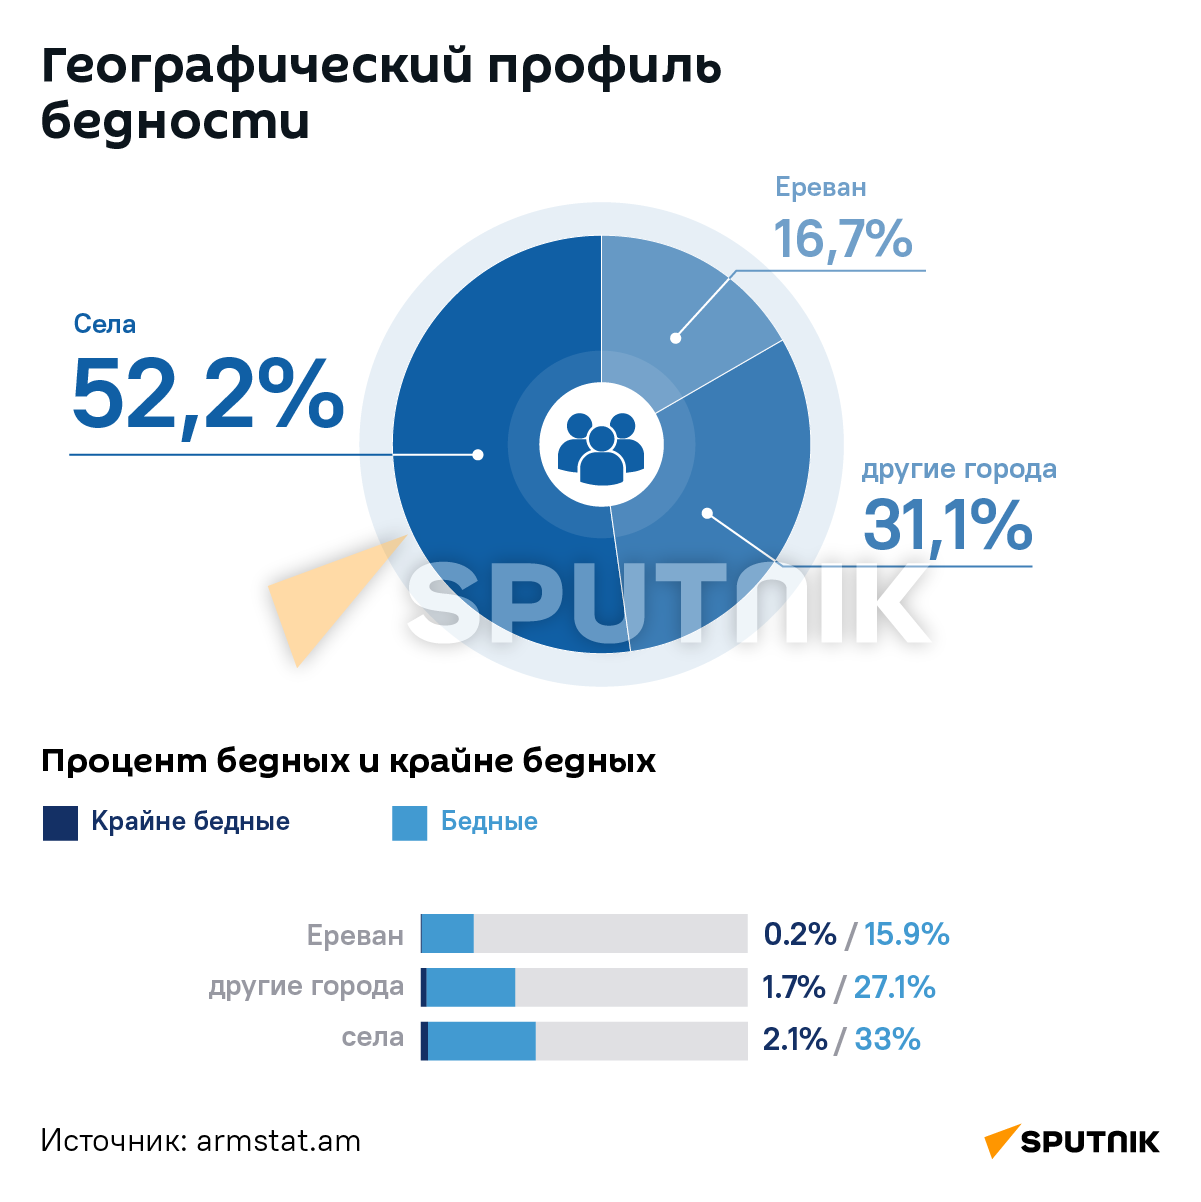 Показатели уровня бедности в Армении в 2021 - Sputnik Армения